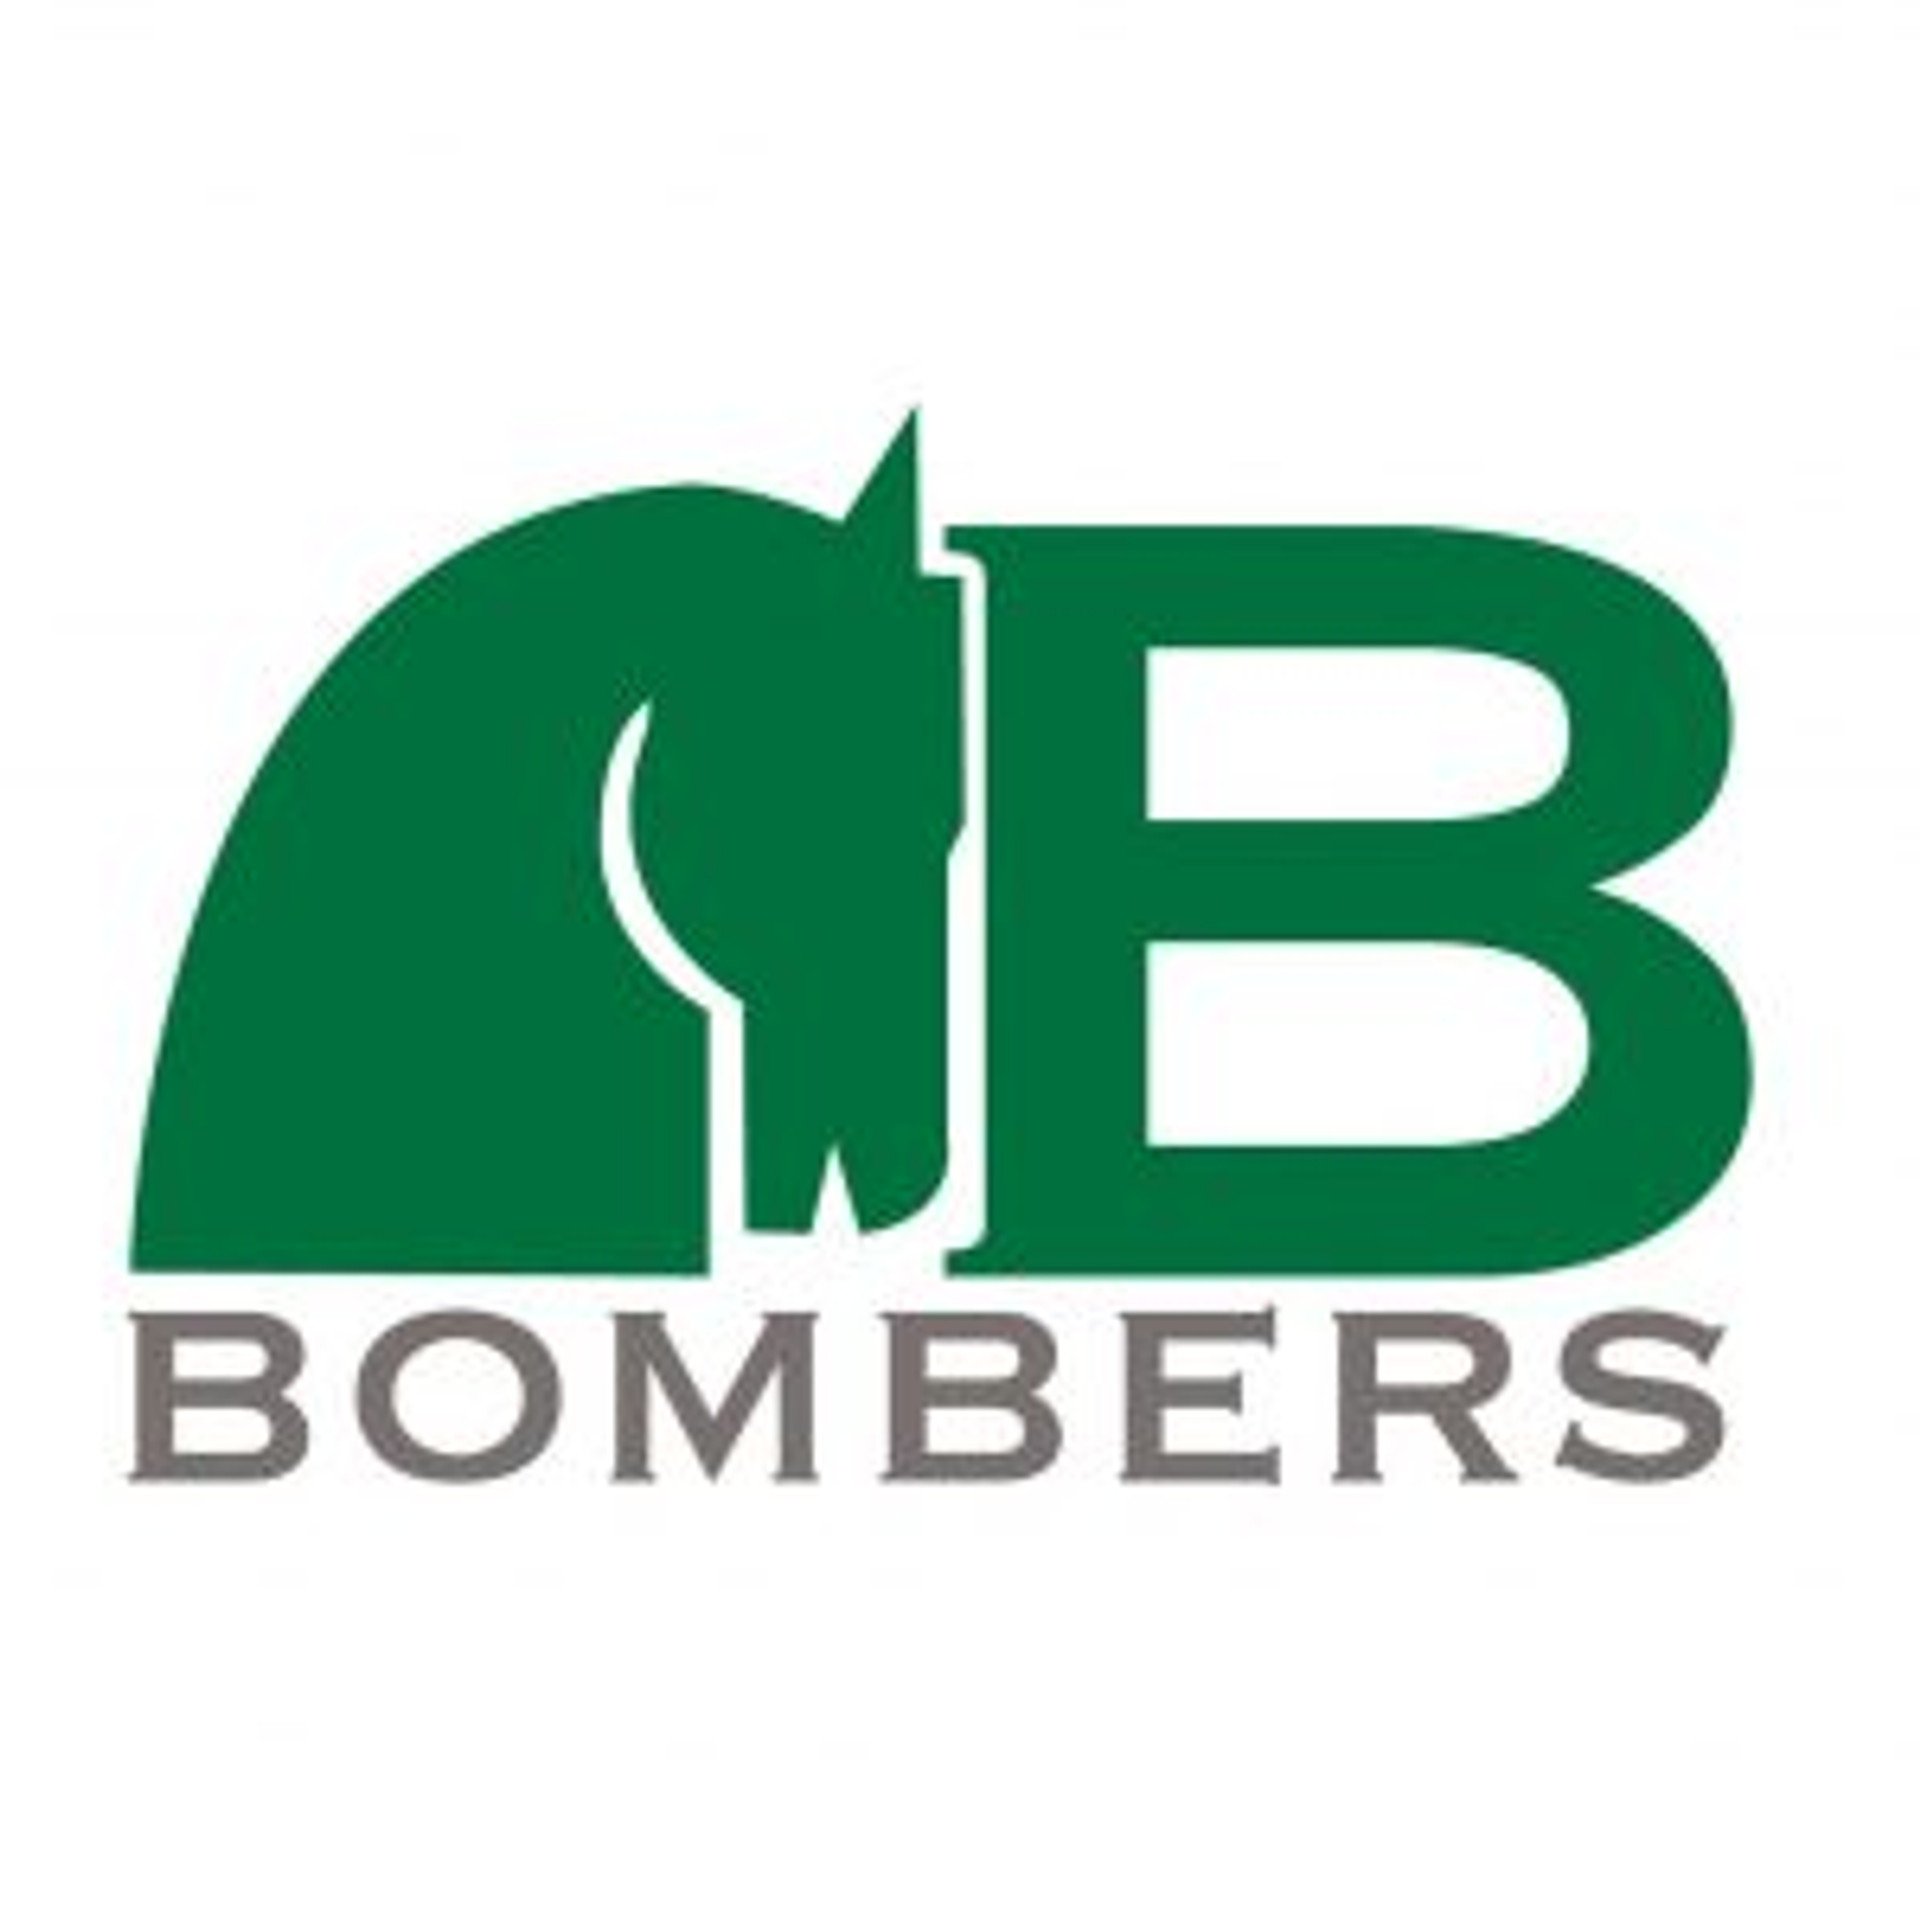 Bomber - Rittforsridsport